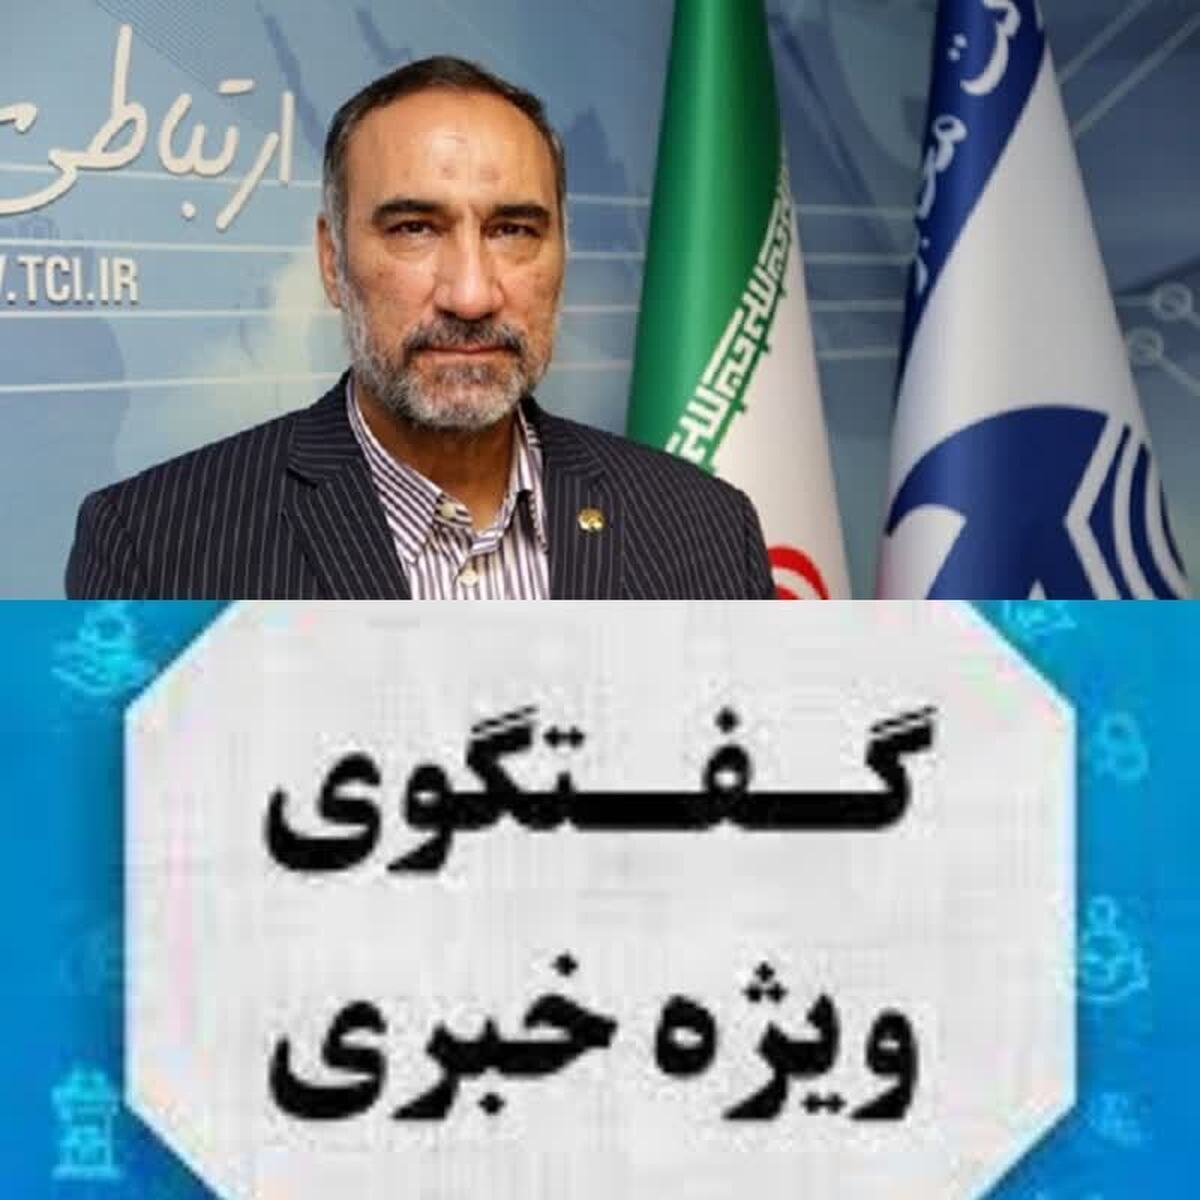 خرم آباد-جام جم آنلاین- مدیرعامل شرکت مخابرات ایران گفت: لرستان در توسعه فیبر نوری از استان‌های برتر کشور به شمار می‌آید